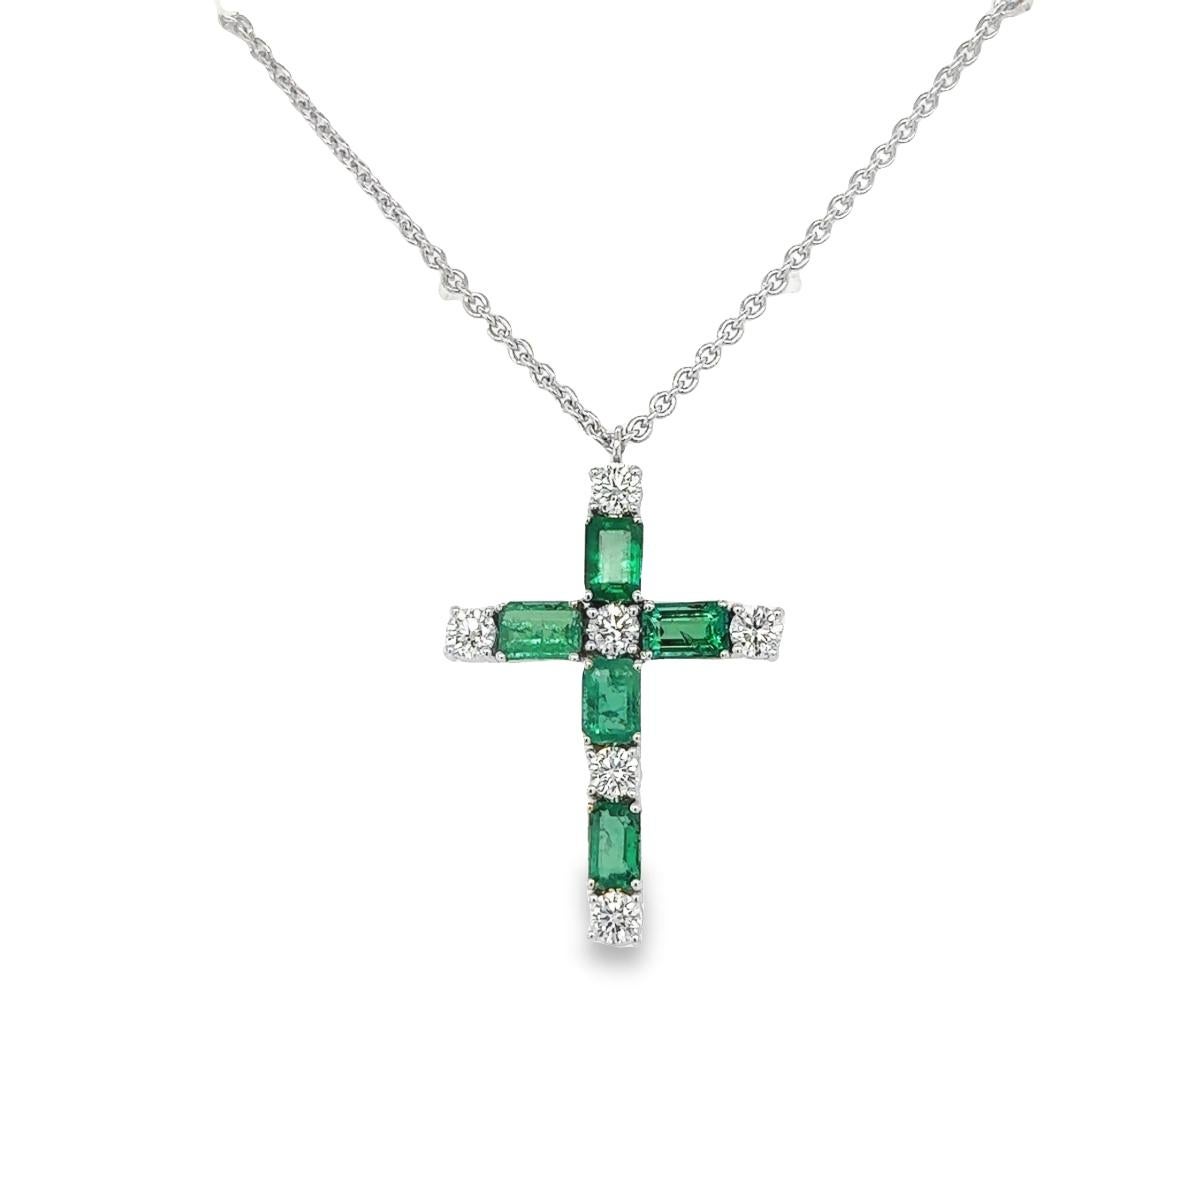 Emerald Cut Emerald Cross pendant necklace For Sale